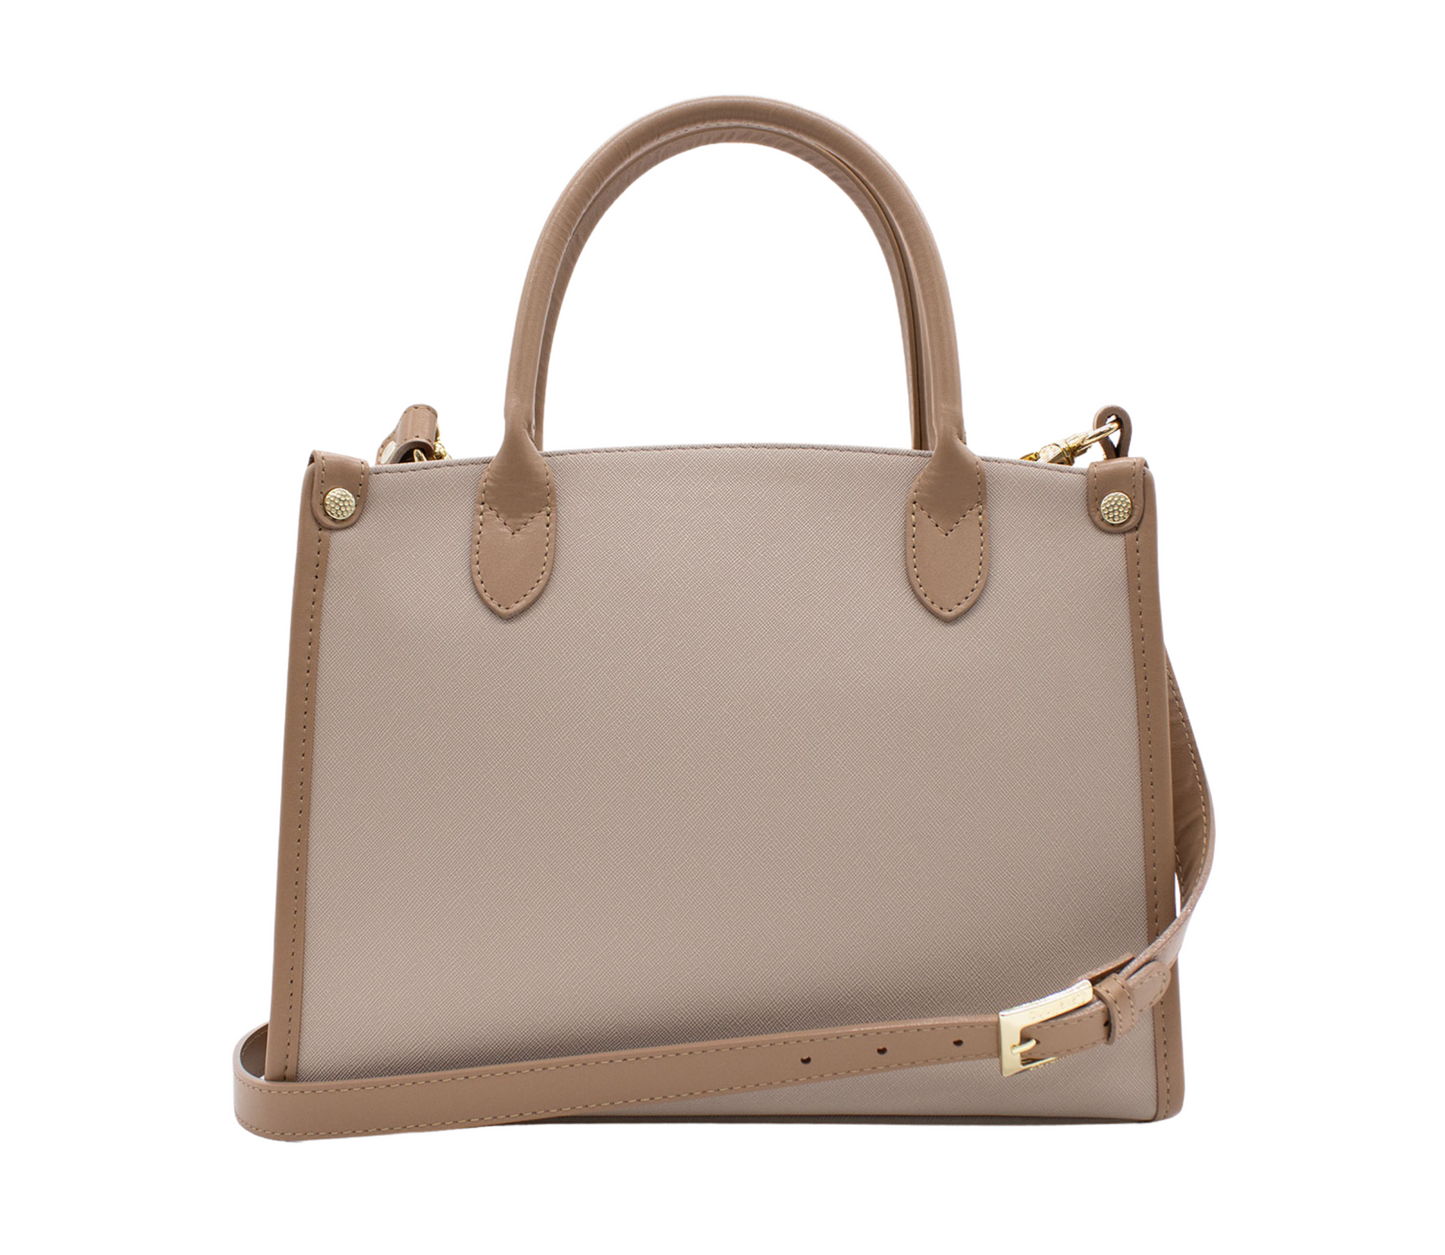 #color_ Beige White Pink | Cavalinho Allegro Handbag - Beige White Pink - 18480480.07_P03